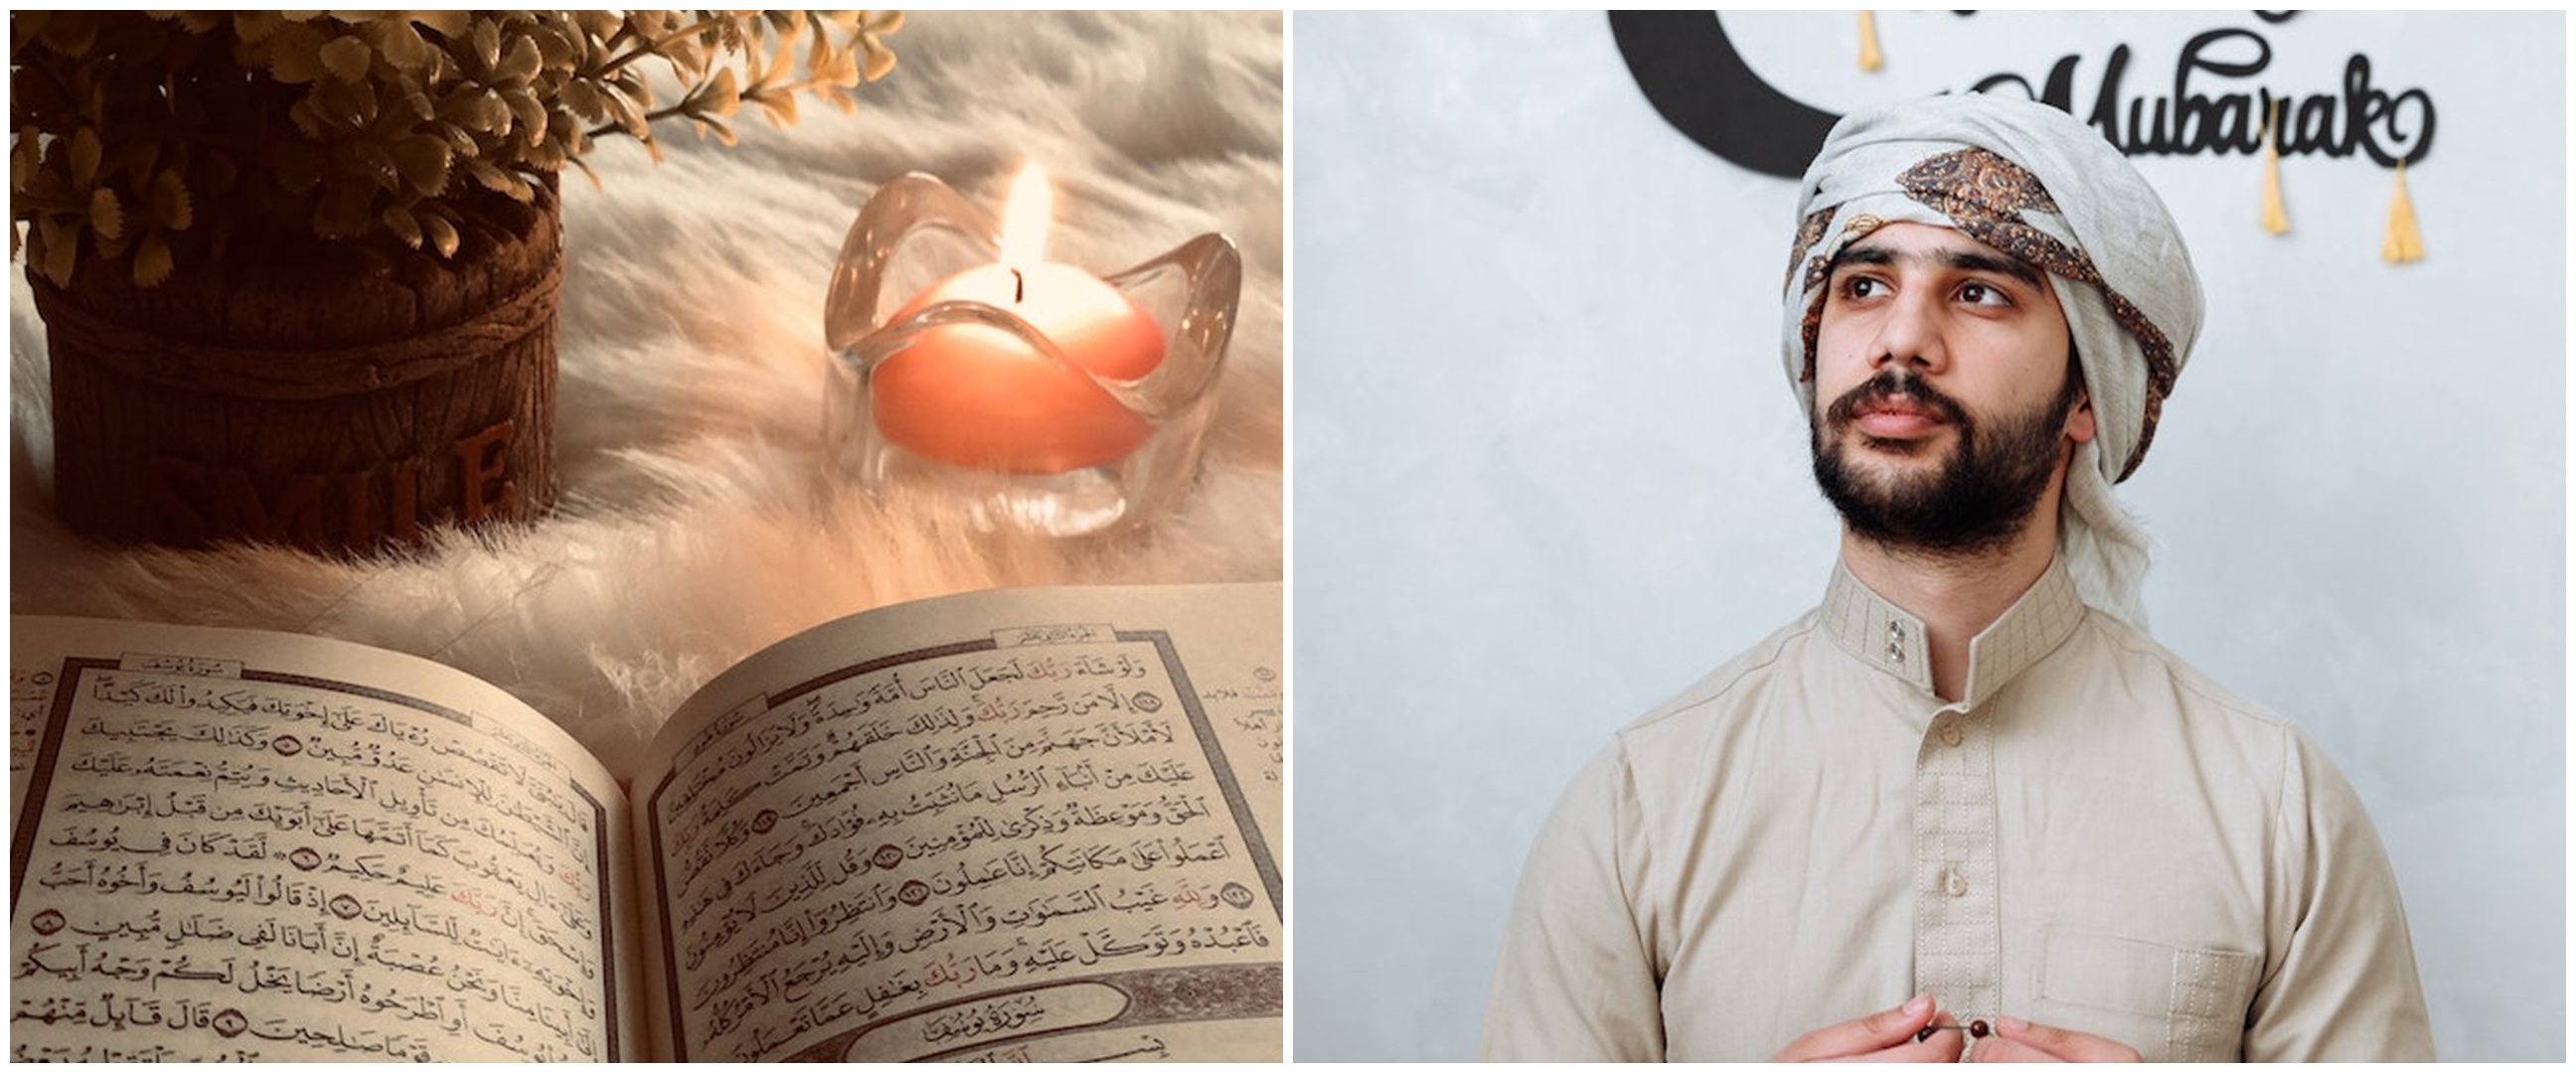 50 Kata mutiara Islam tentang bulan Ramadhan yang menyentuh hati, penuh makna mendalam